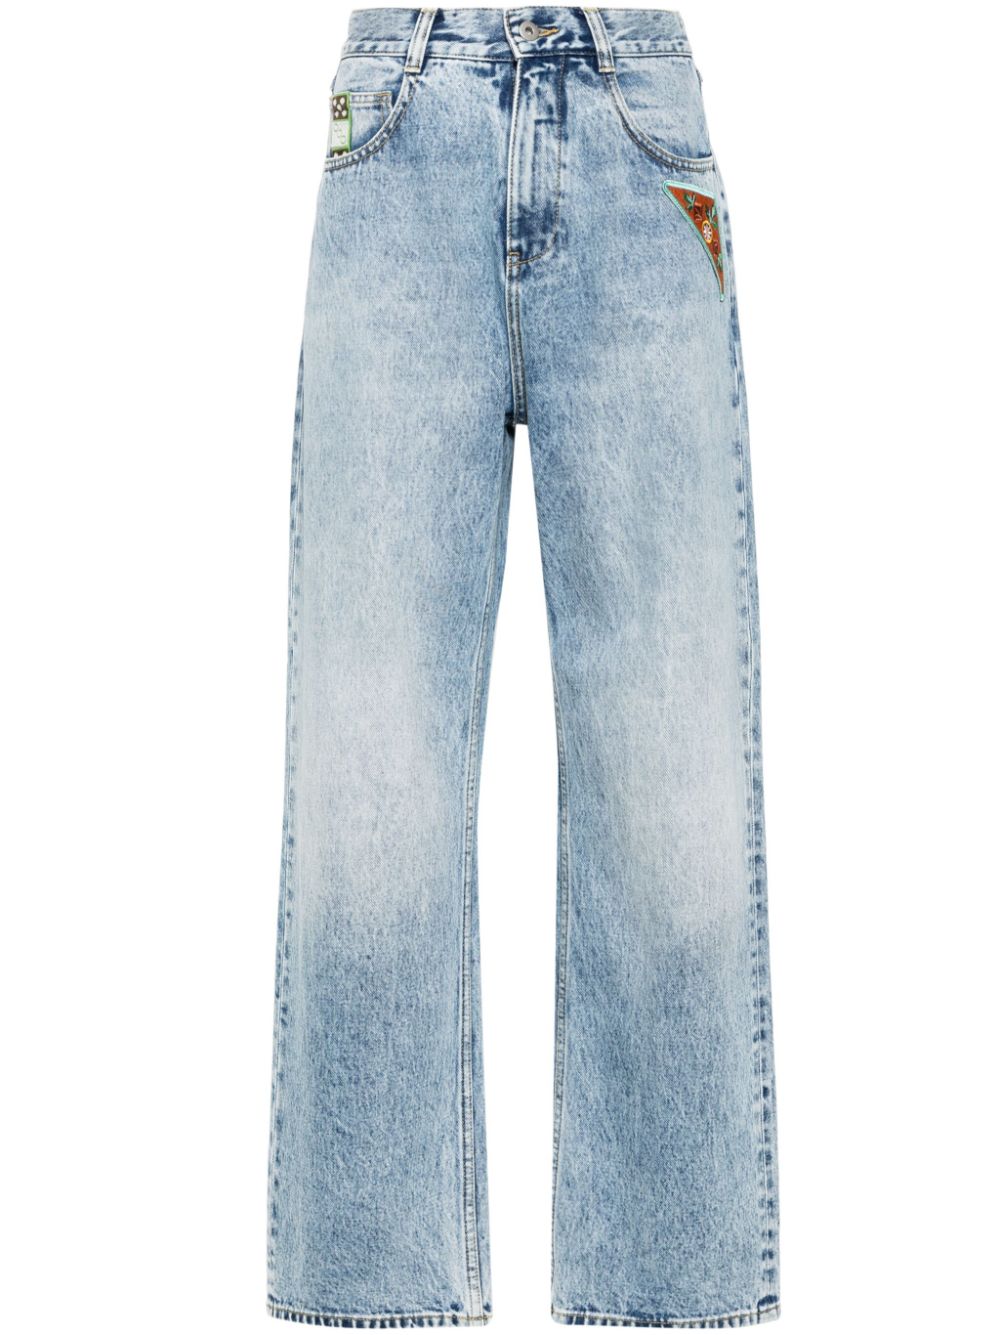 ALEMAIS Jackpot Jeans - Blue von ALEMAIS